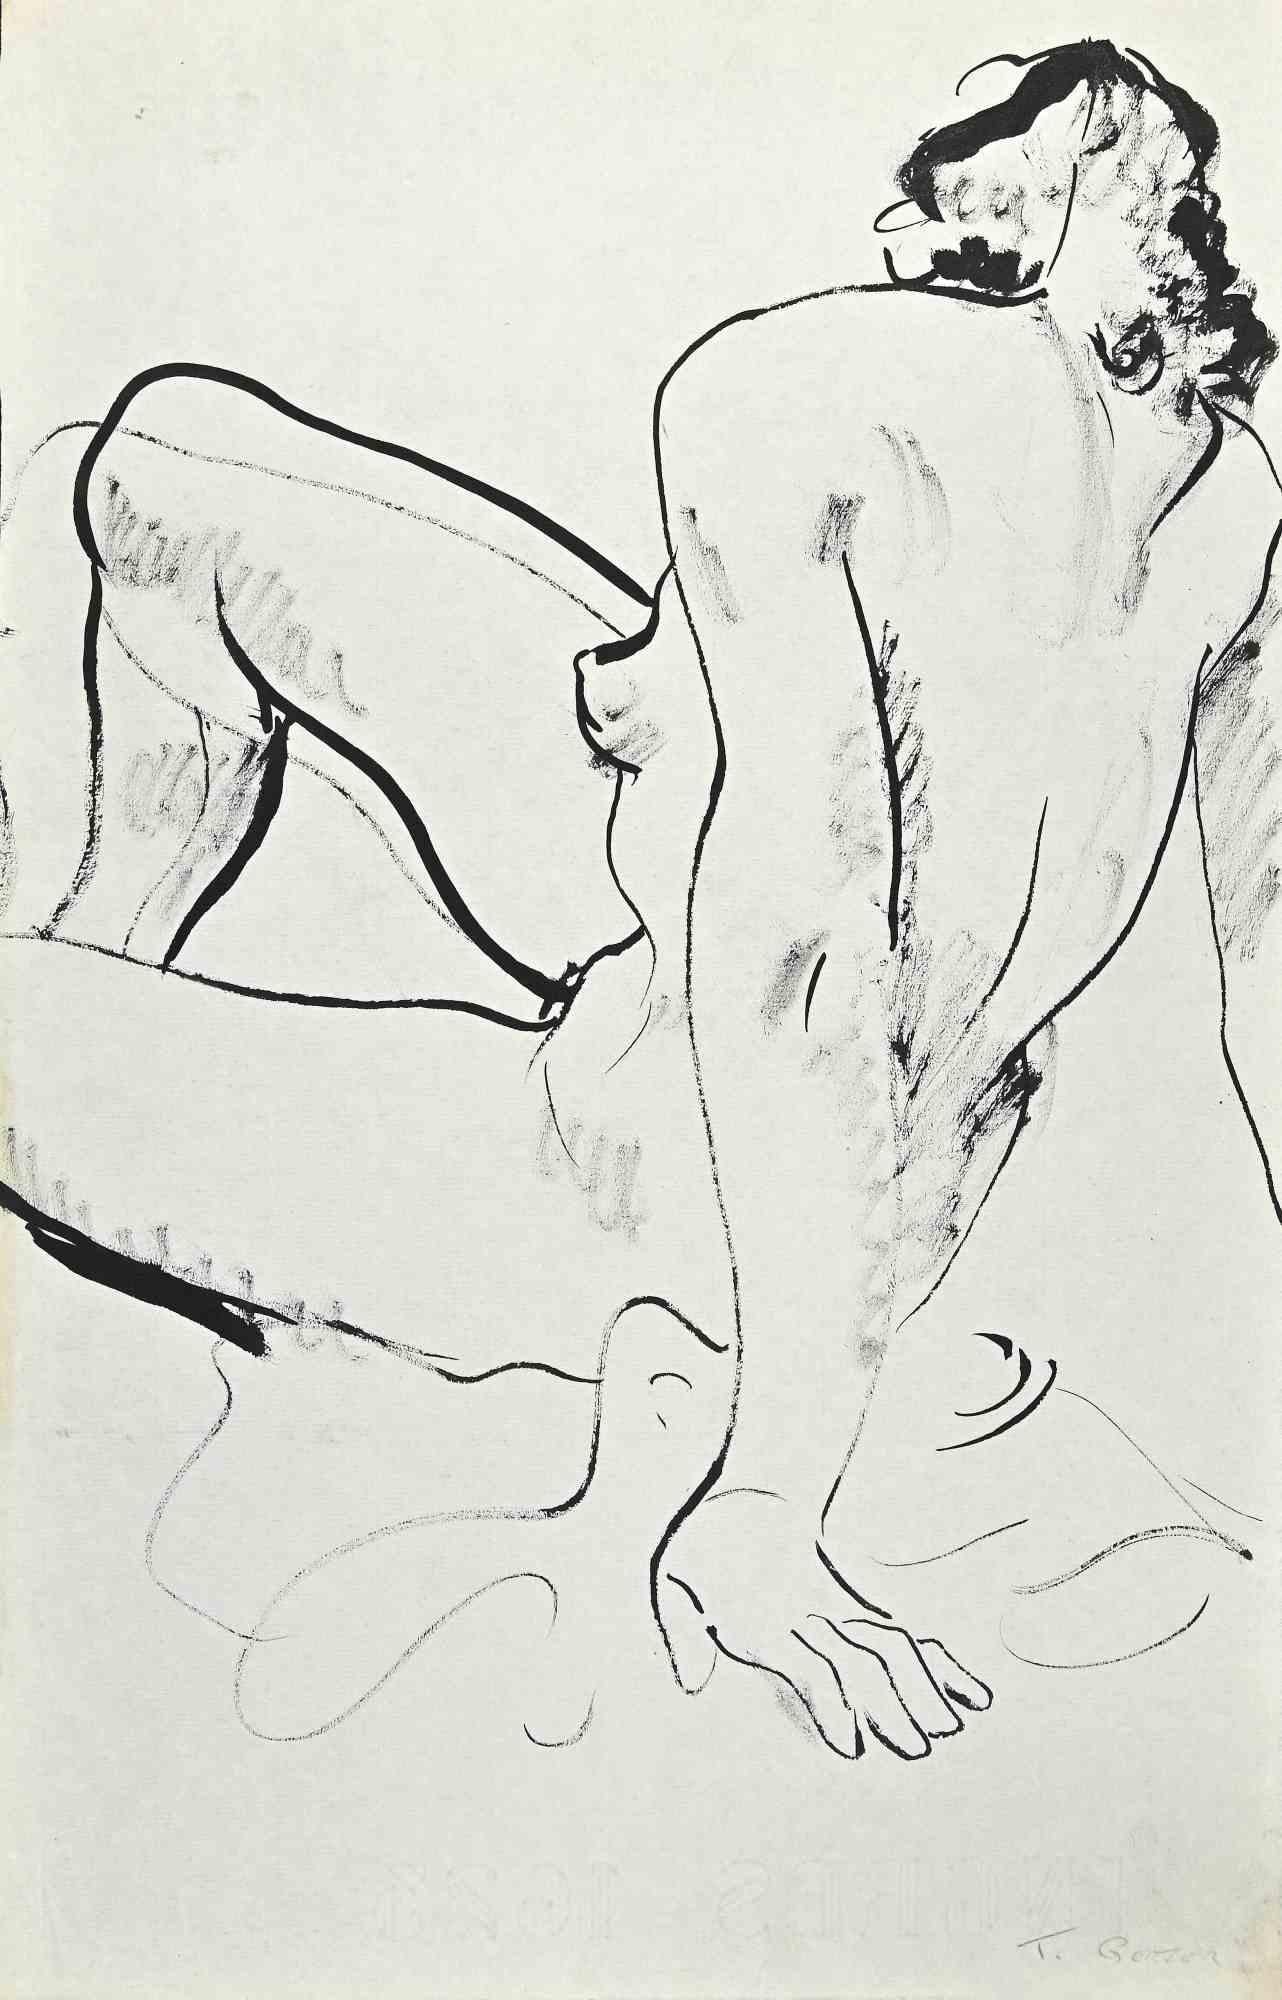 Nude est un dessin original au feutre sur papier couleur crème réalisé par Tibor Gertler au milieu du 20e siècle.

Signé à la main en bas à droite.

Bonnes conditions.I.I.

L'œuvre d'art est représentée par des traits habiles et fins, réalisés avec